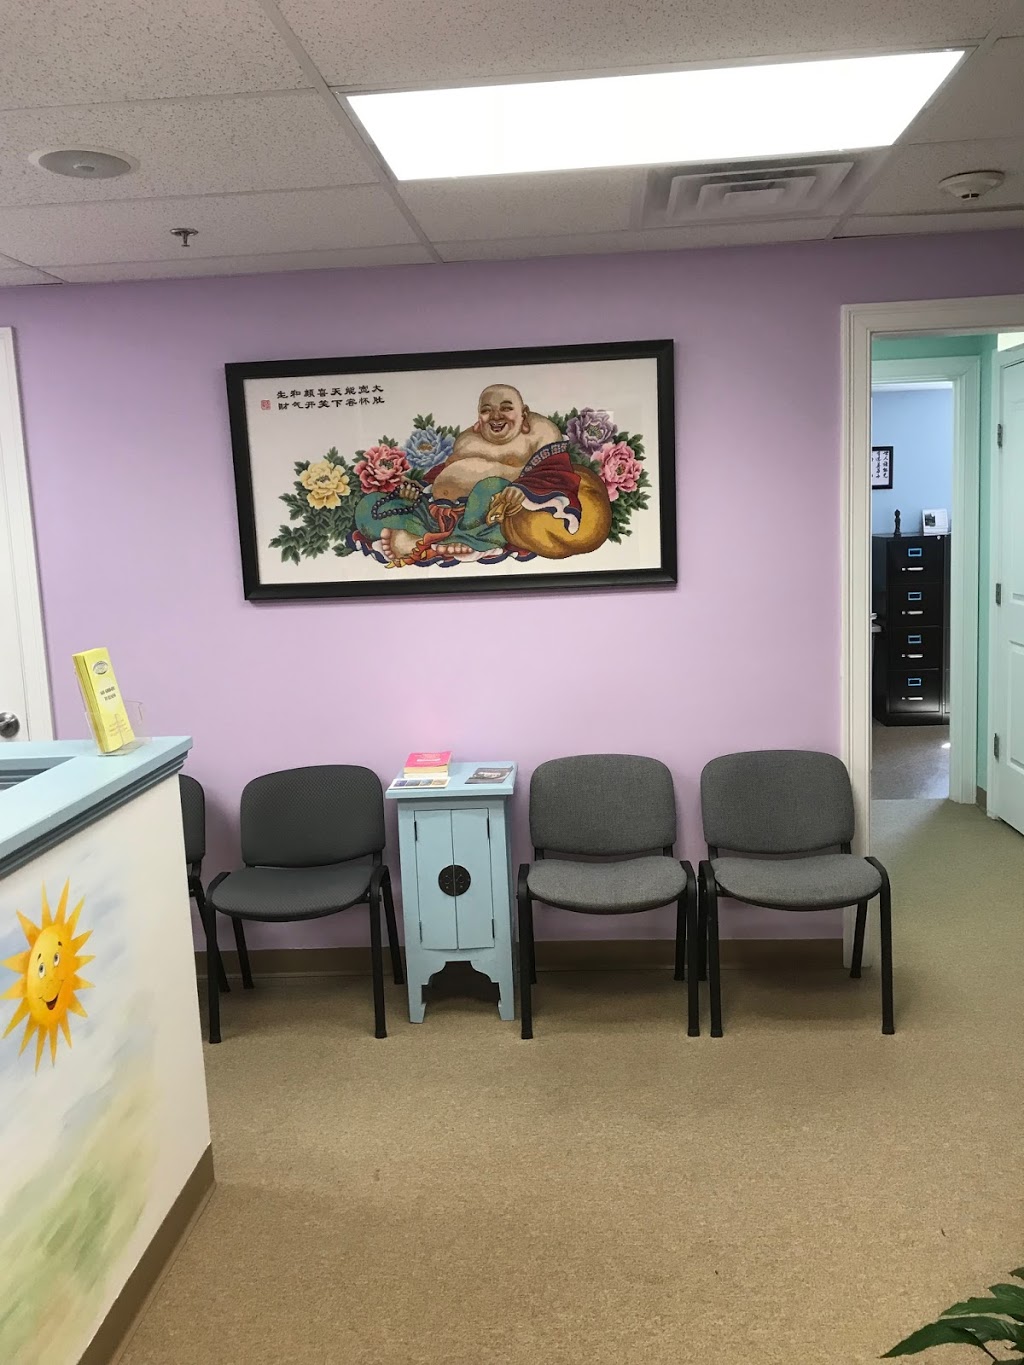 Millis Acupuncture Center | 969 Main St Suite 6, Millis, MA 02054, USA | Phone: (508) 202-8447